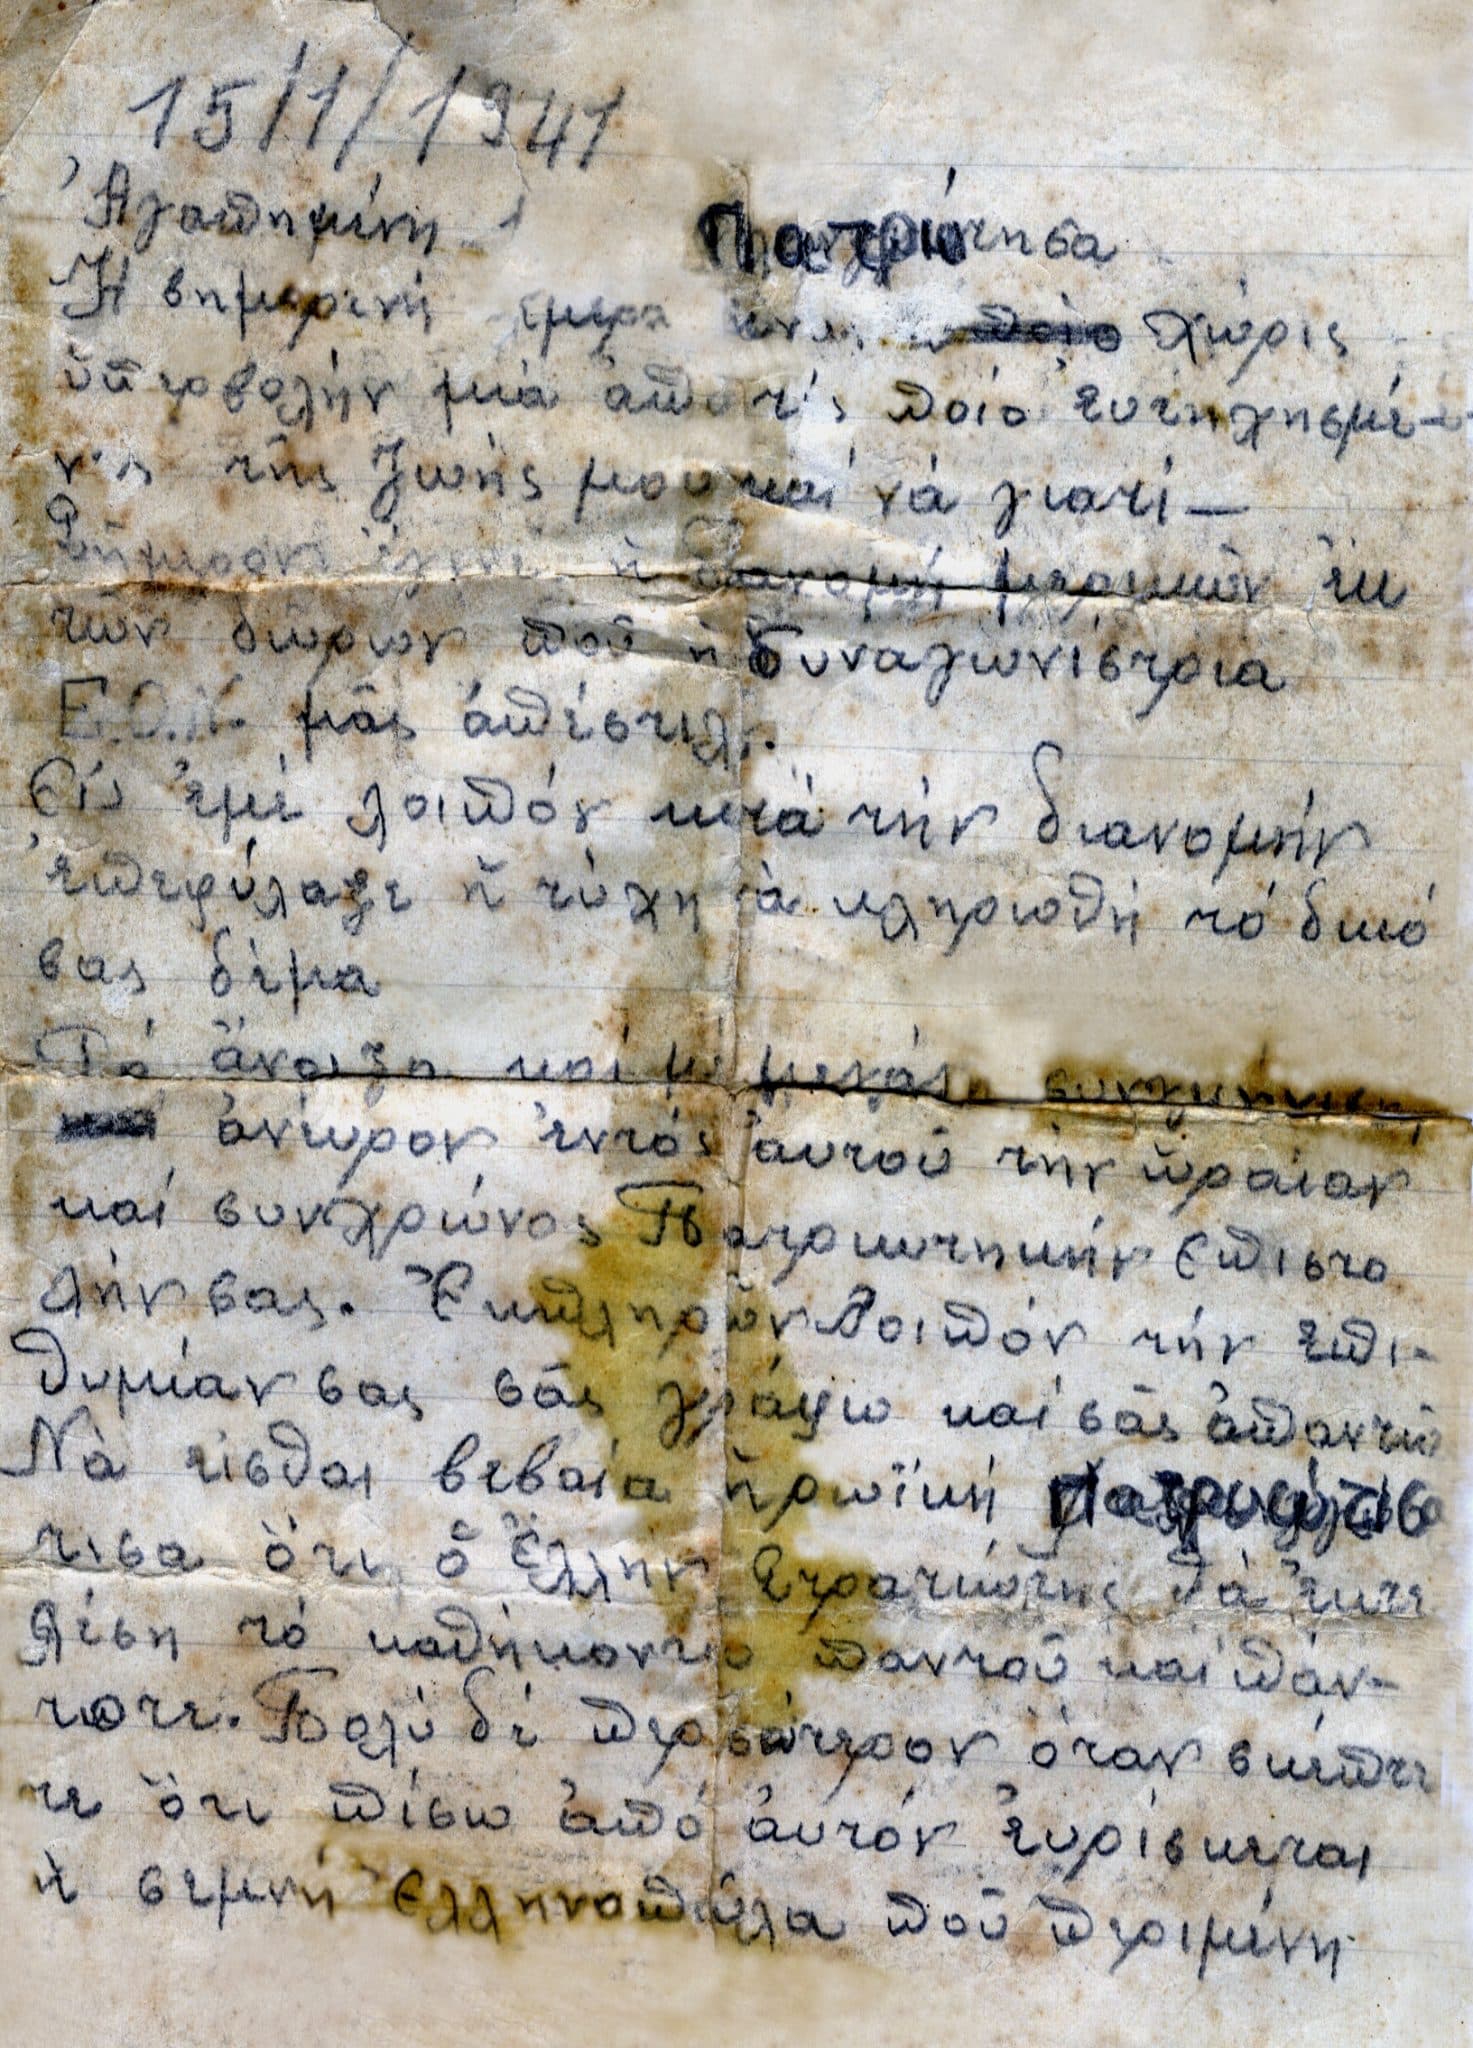 gramma scaled - 28η Οκτωβρίου: Τα «μυστικά» γράμματα αδελφής στρατιώτη που ήταν στο μέτωπο (εικόνες)